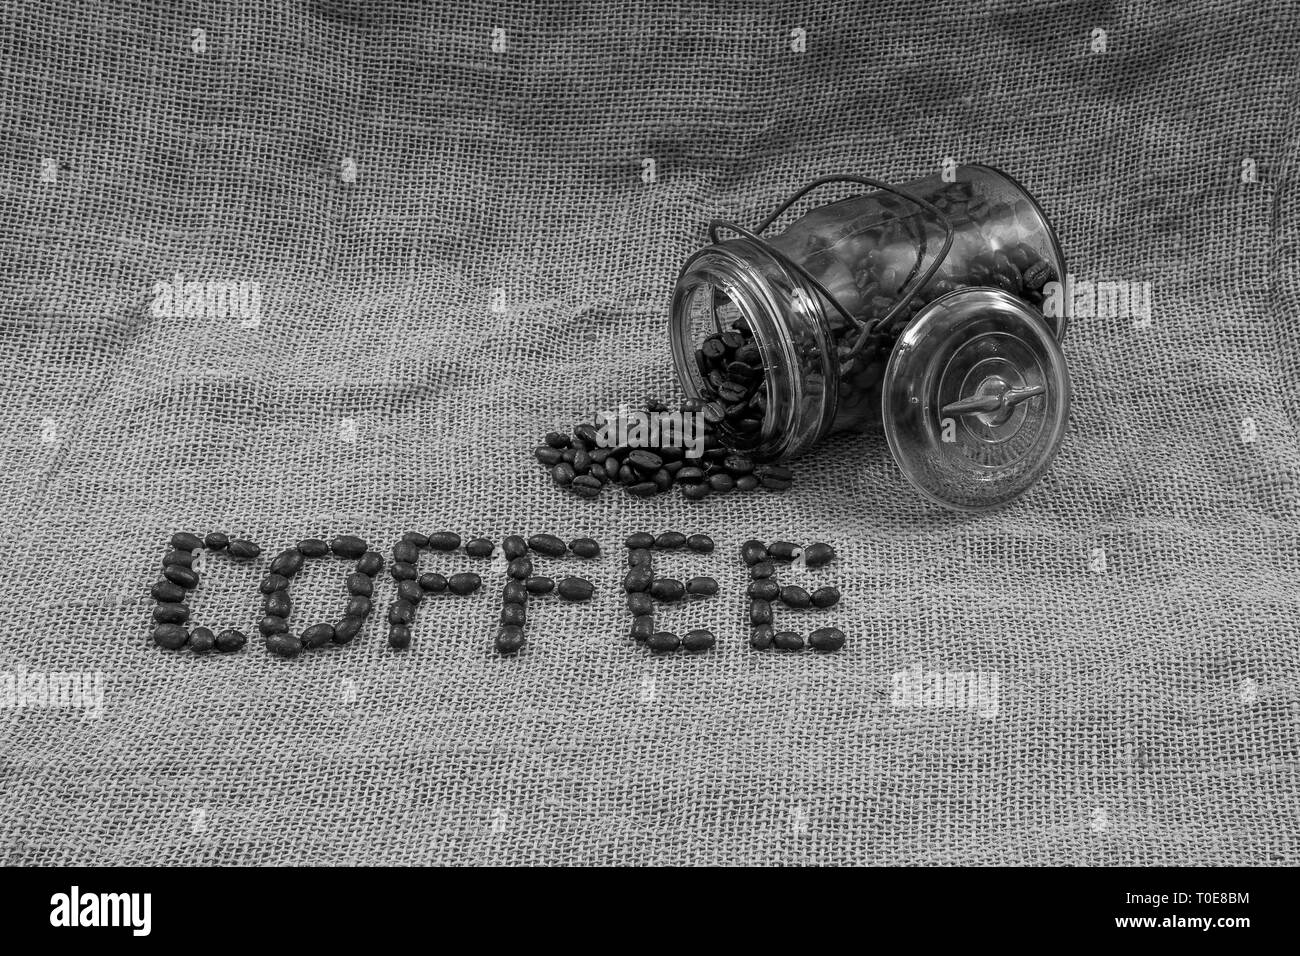 Kaffee Bohnen, Kaffee und ein antikes Glas mit Bohnen, verschüttet Stockfoto